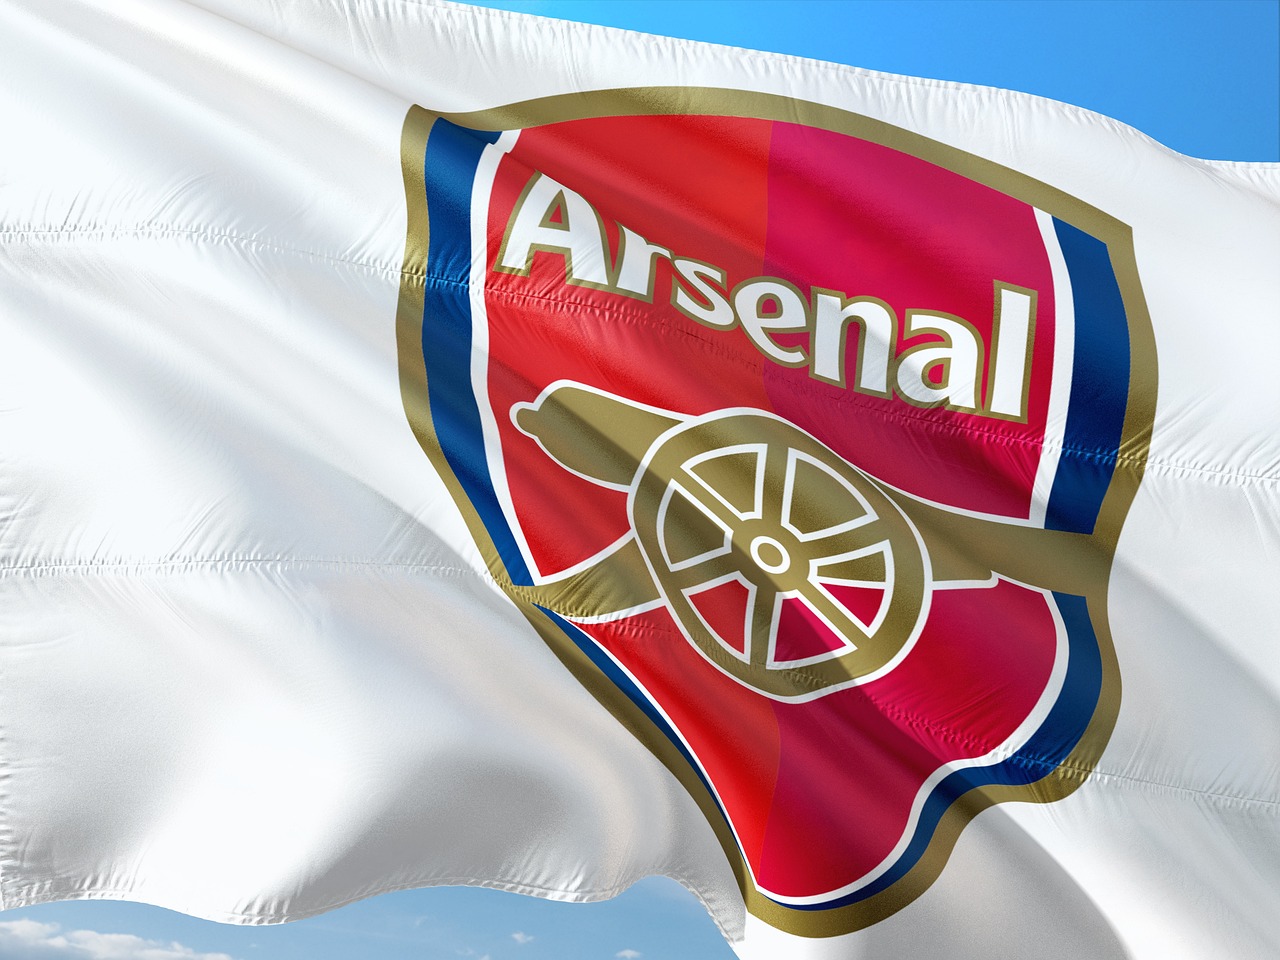 Top 5 Arsenal FC Champions League Performances